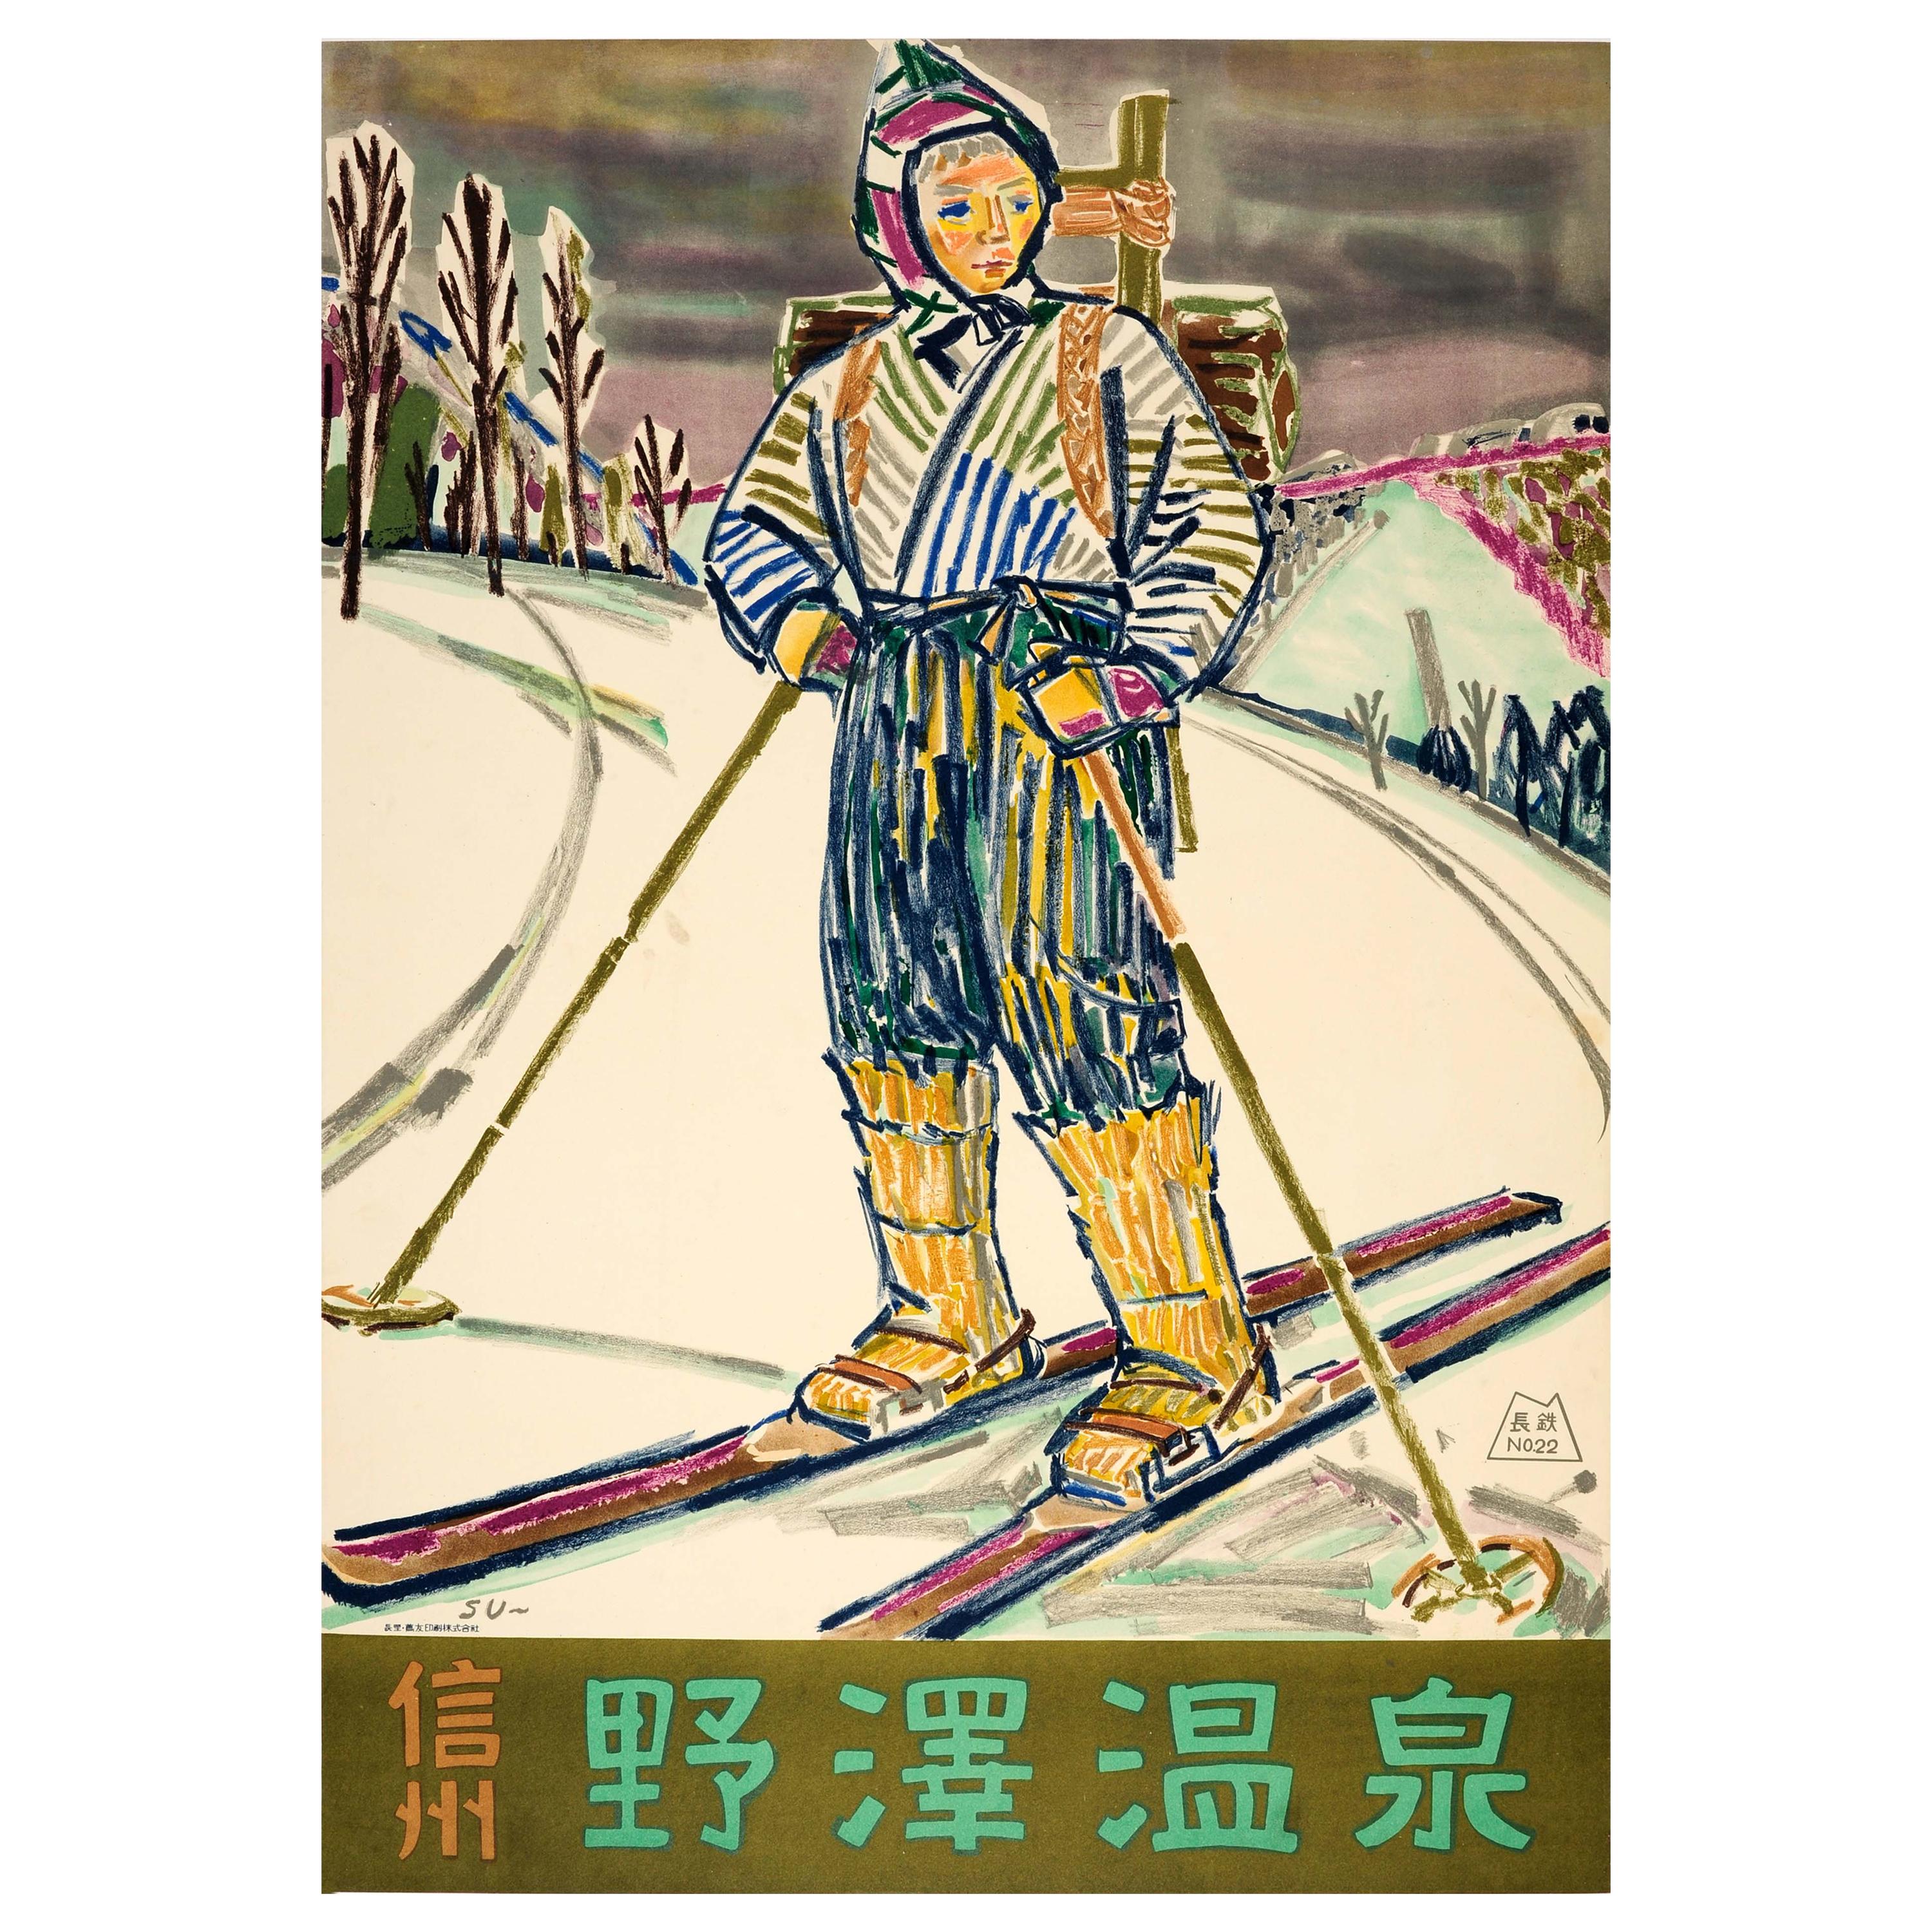 Original Vintage Japan Travel Poster for Nozawa Onsen Skiing Winter Sport Resort